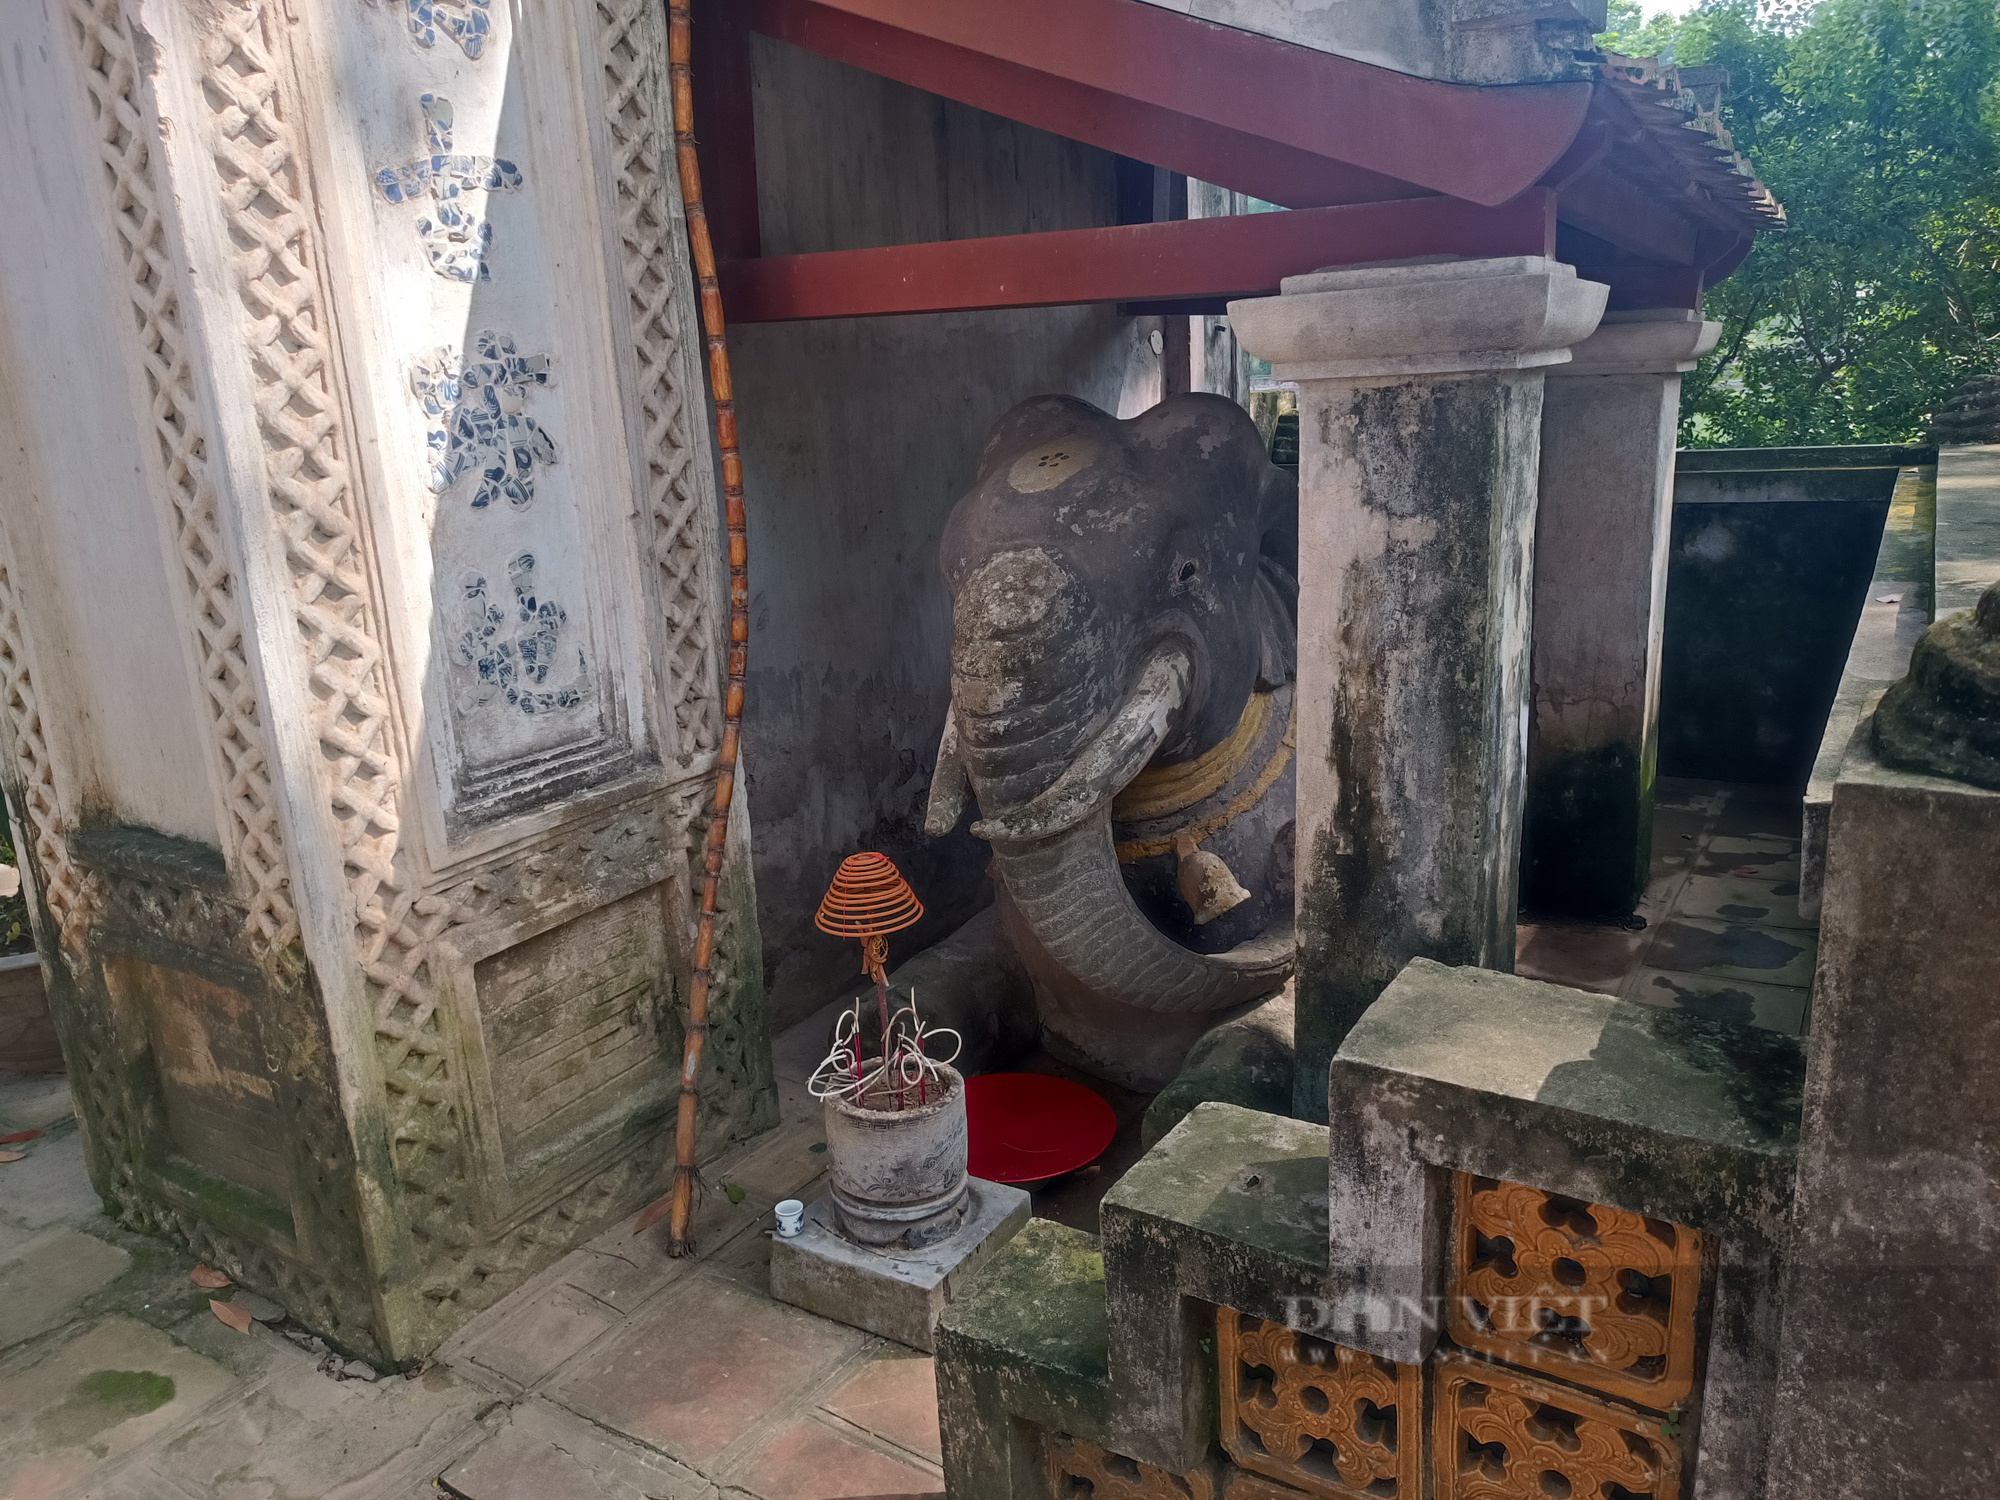 Sự thật bất ngờ về cặp voi quỳ gối trước đền cổ ở Thủ đô Hà Nội - Ảnh 3.